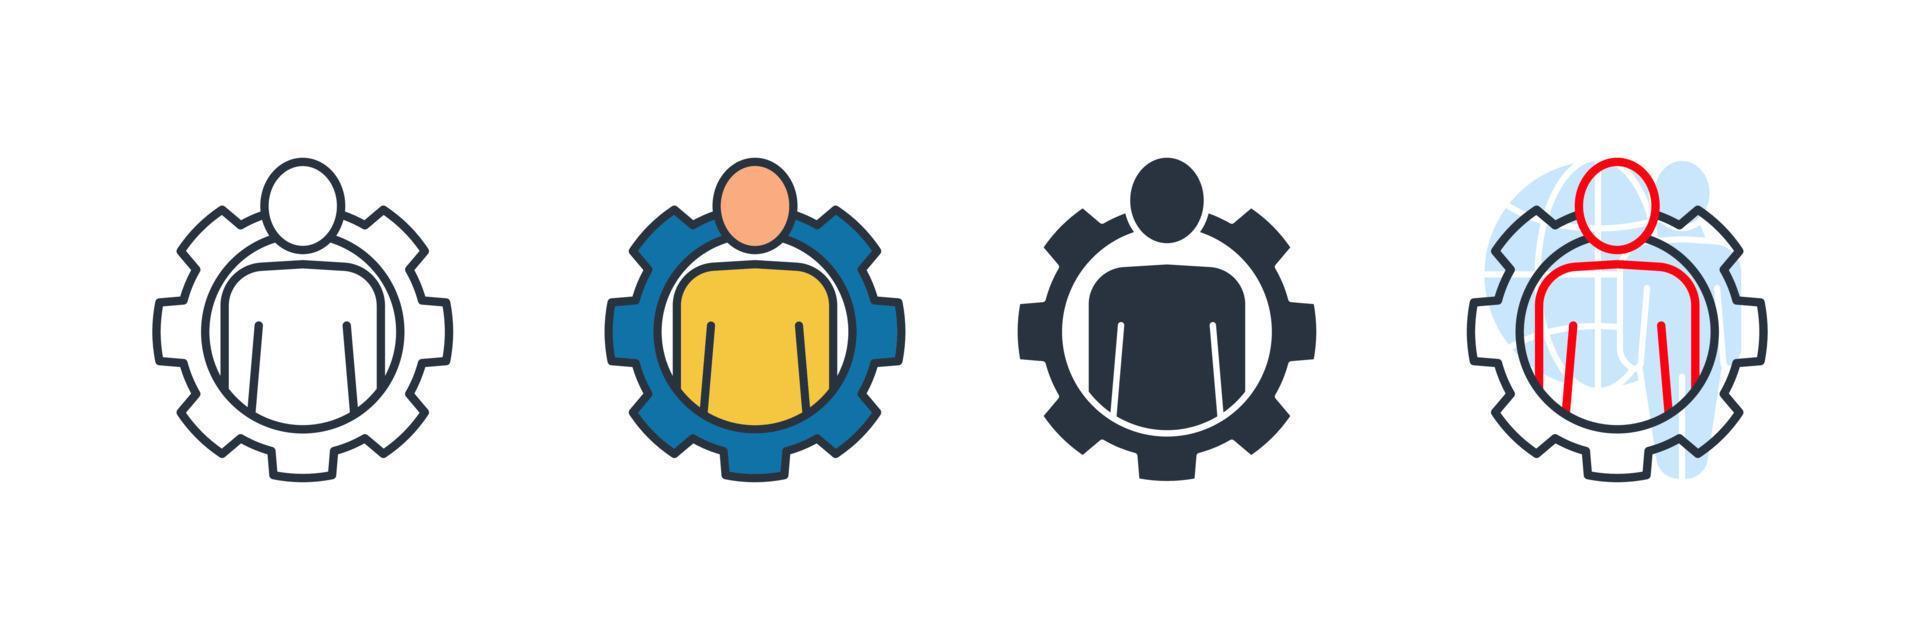 ilustração em vetor logotipo do empregado ícone. modelo de símbolo de pessoas de gerenciamento para coleção de design gráfico e web